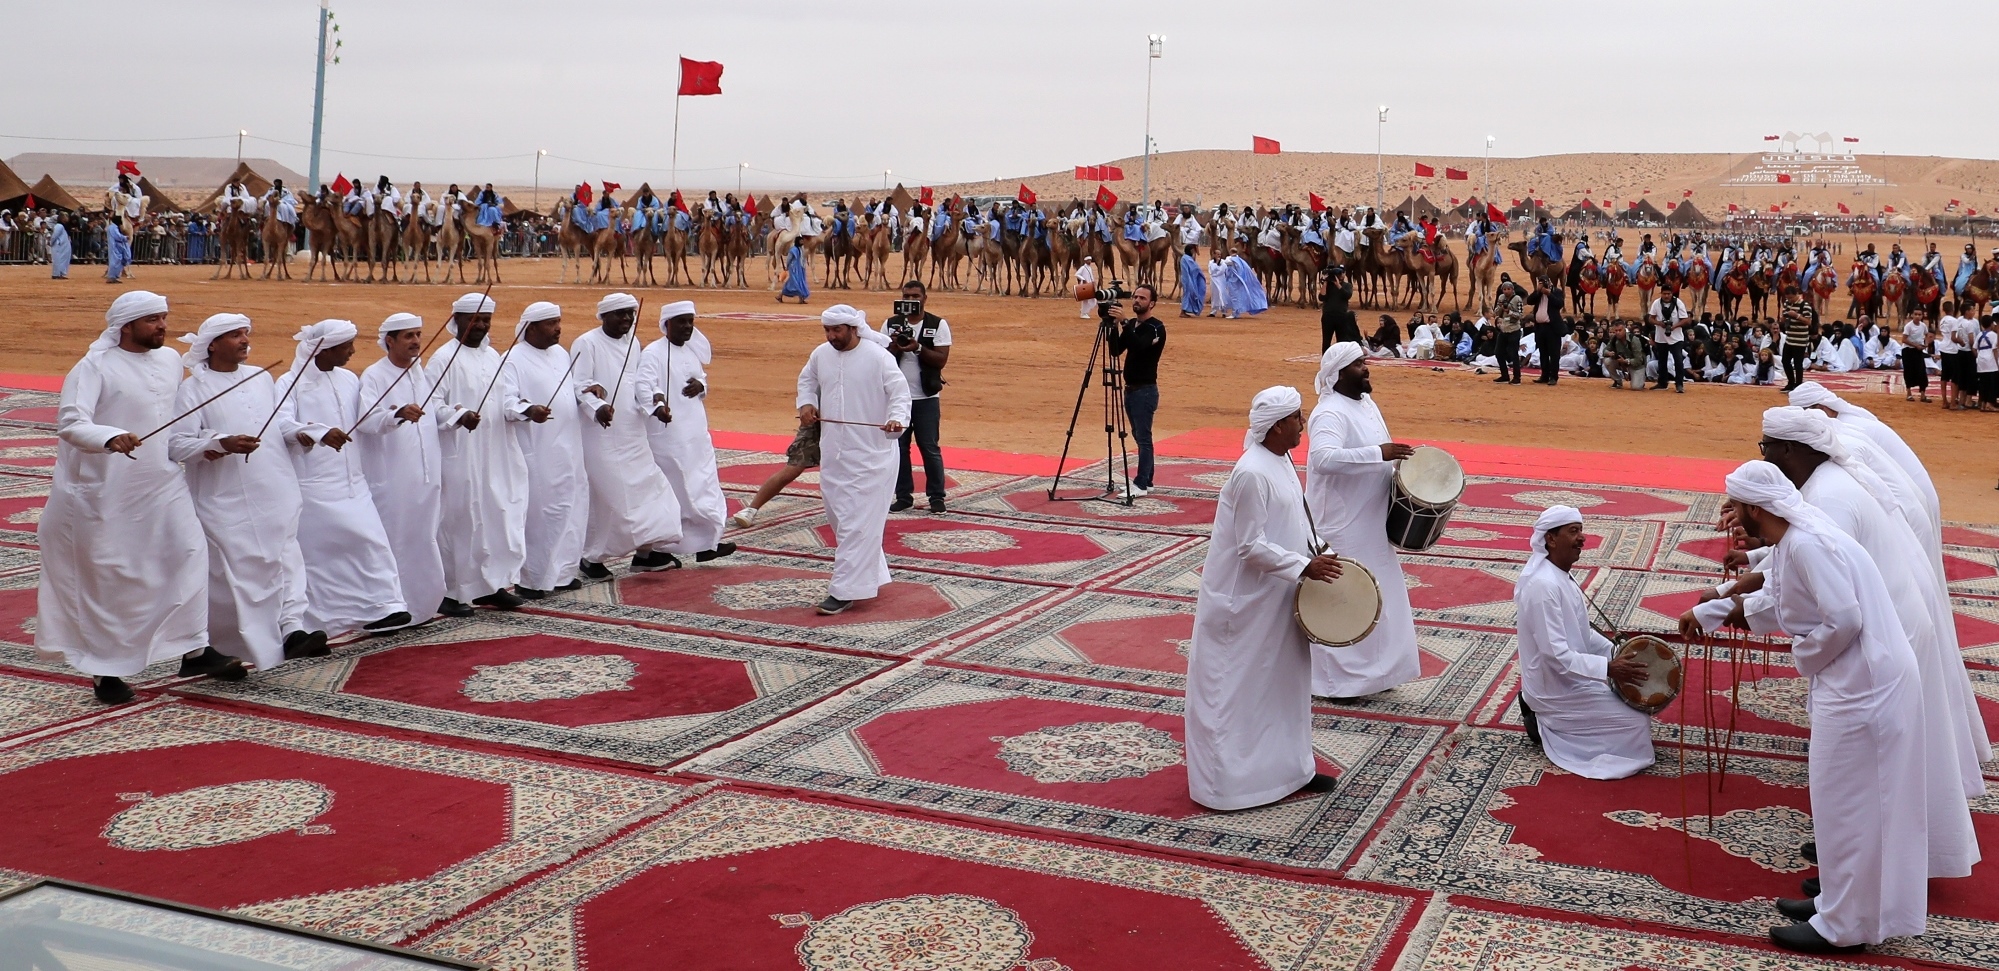 فرقة أبوظبي للفنون الشعبية ضمن مشاركتها بالحفل الرئيسي